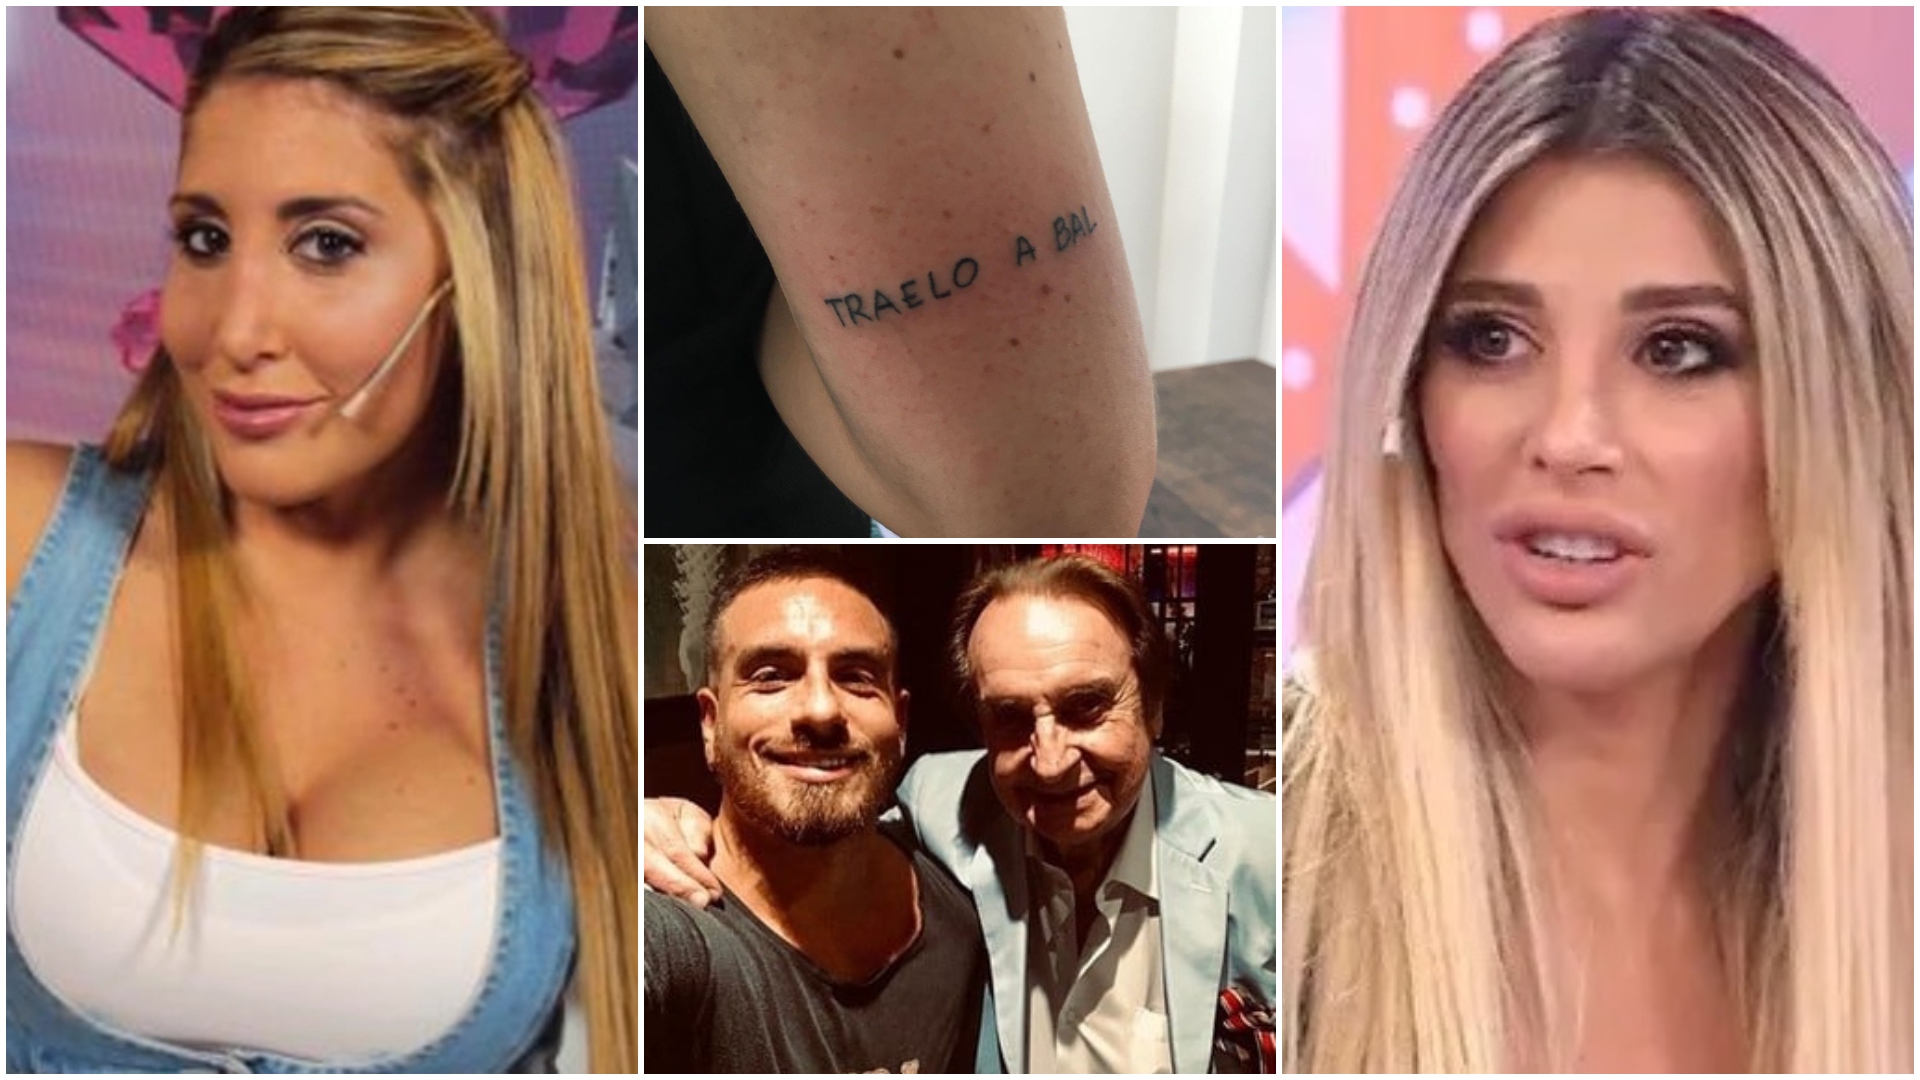 Infidelidad, gritos al aire y separación: la verdadera historia detrás del tatuaje viral “Traelo a Bal”